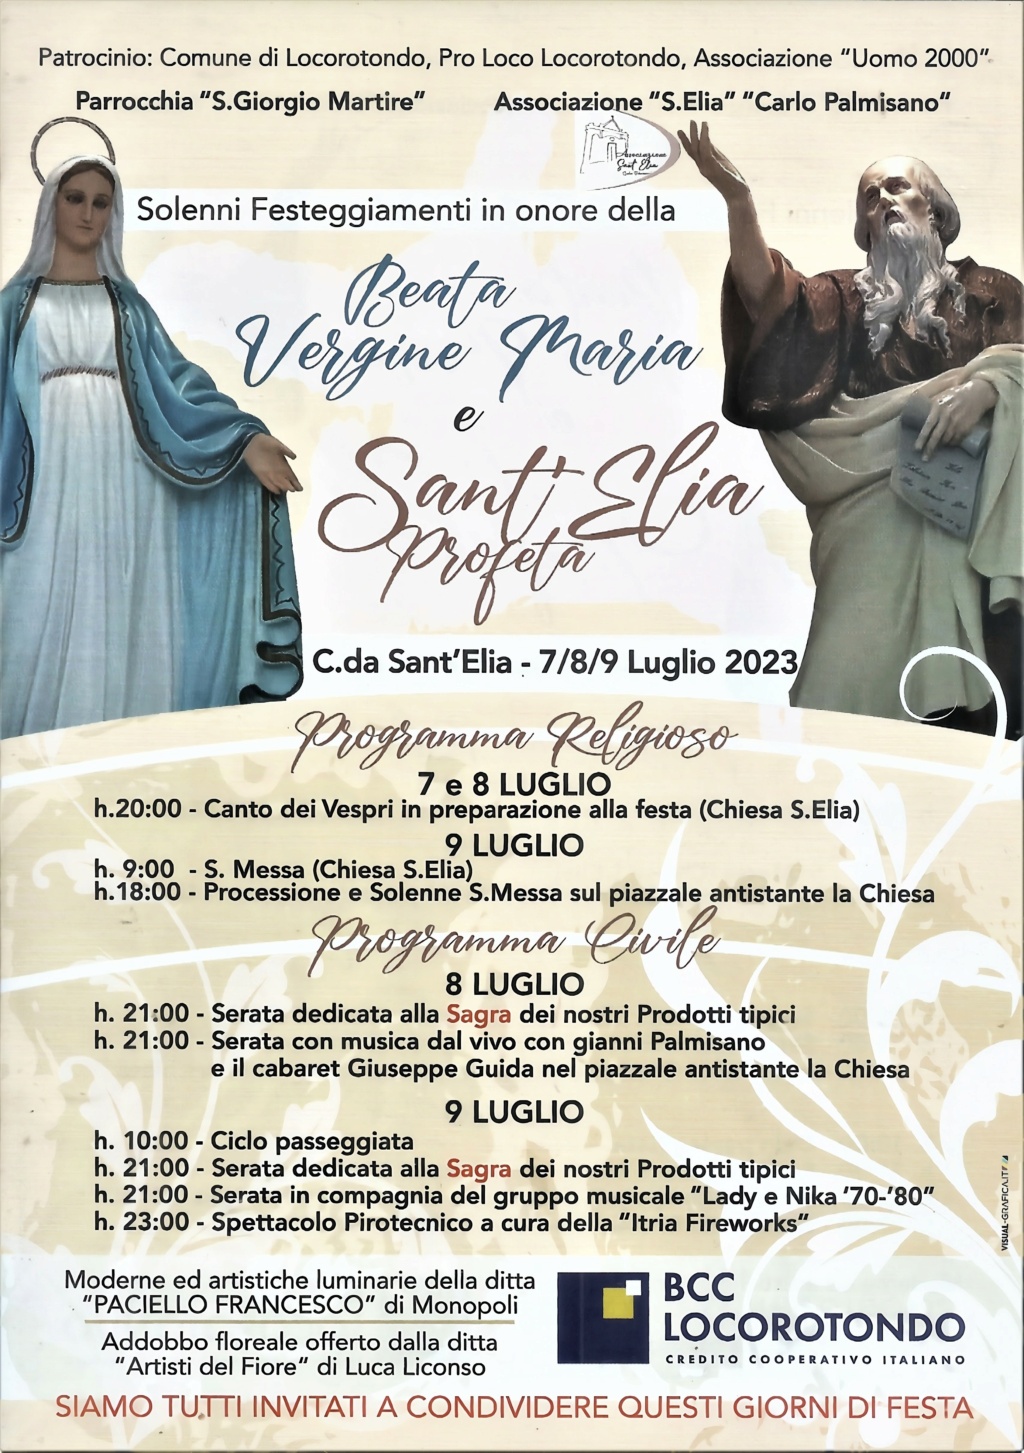 Solenni Festeggiamenti in onore della Beata Vergine Maria e Sant'Elia Profeta - Locorotondo (BA) Progra11